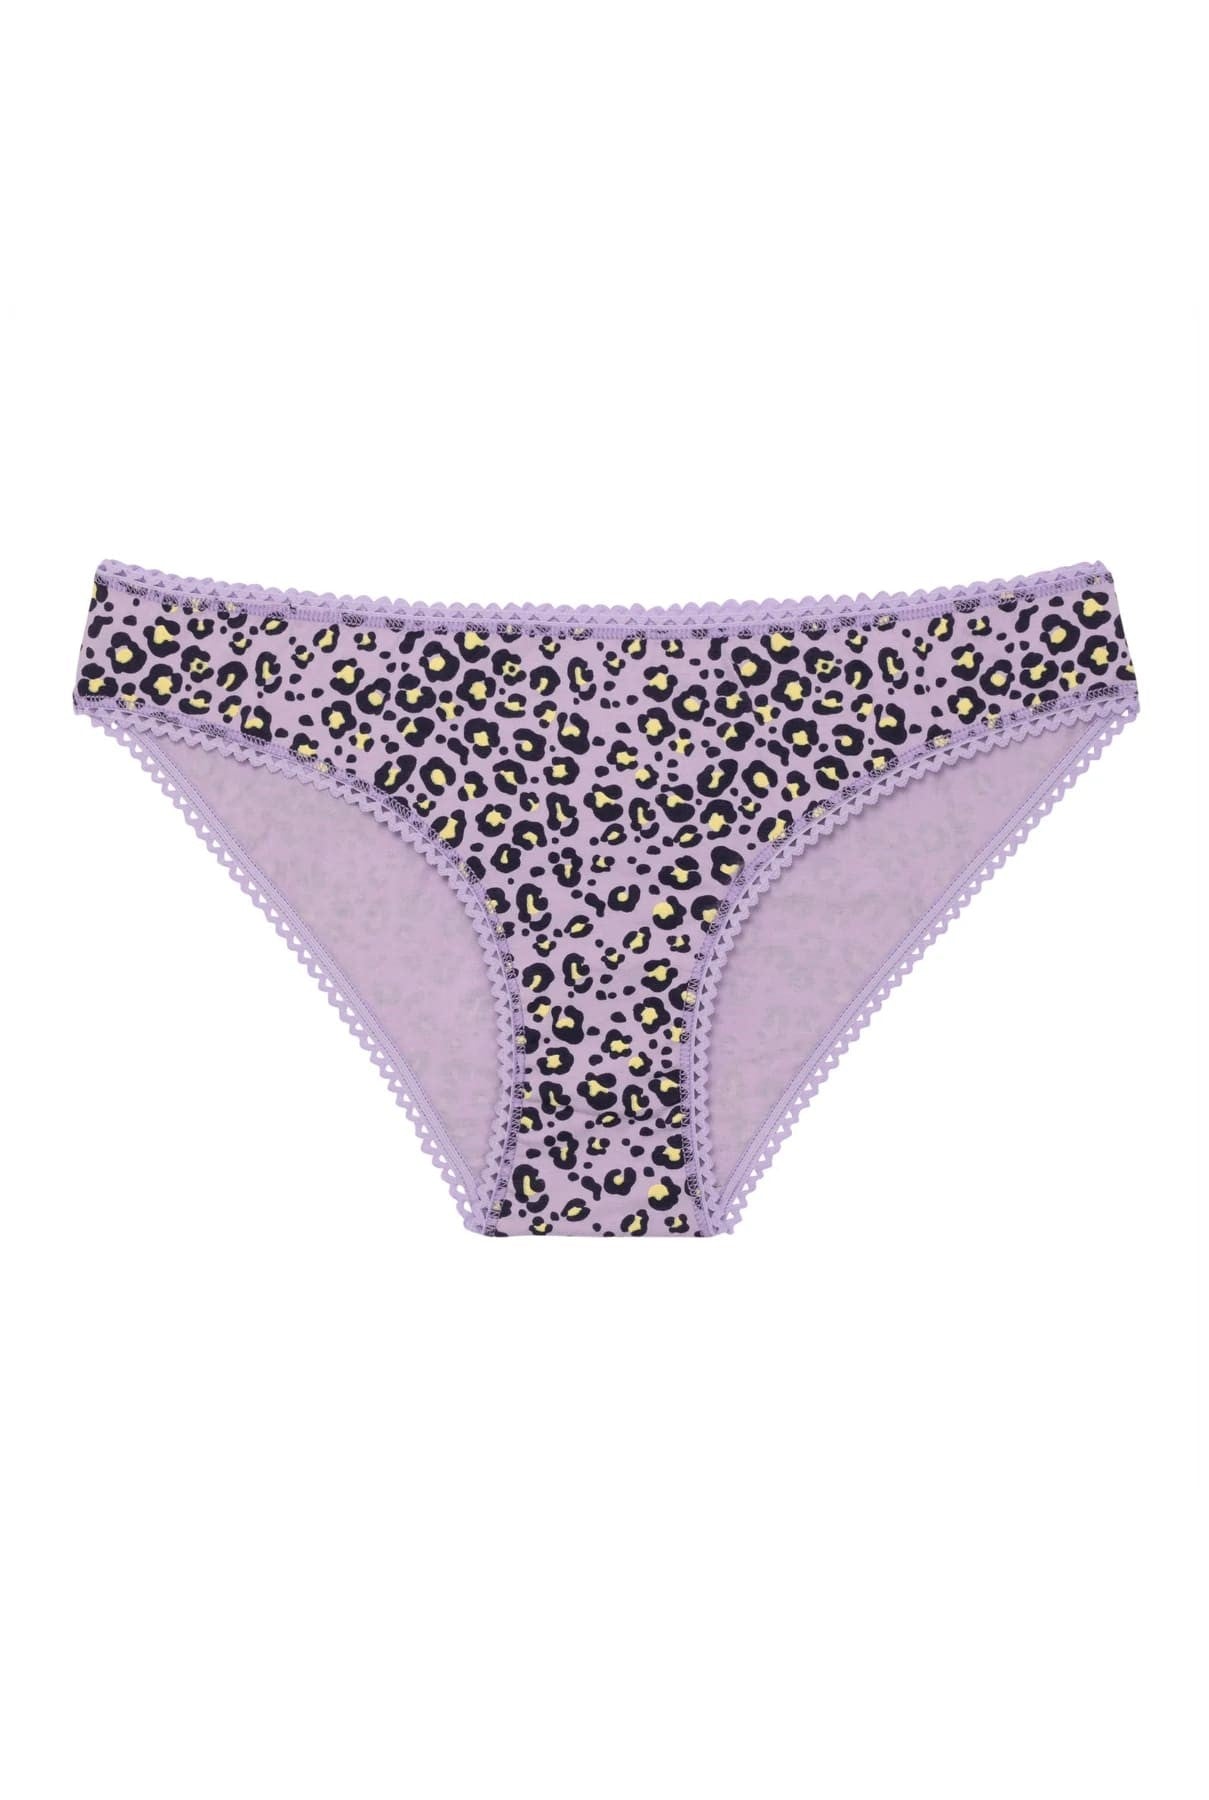 Culotte coton biologique - Leopard - violet - fairytale